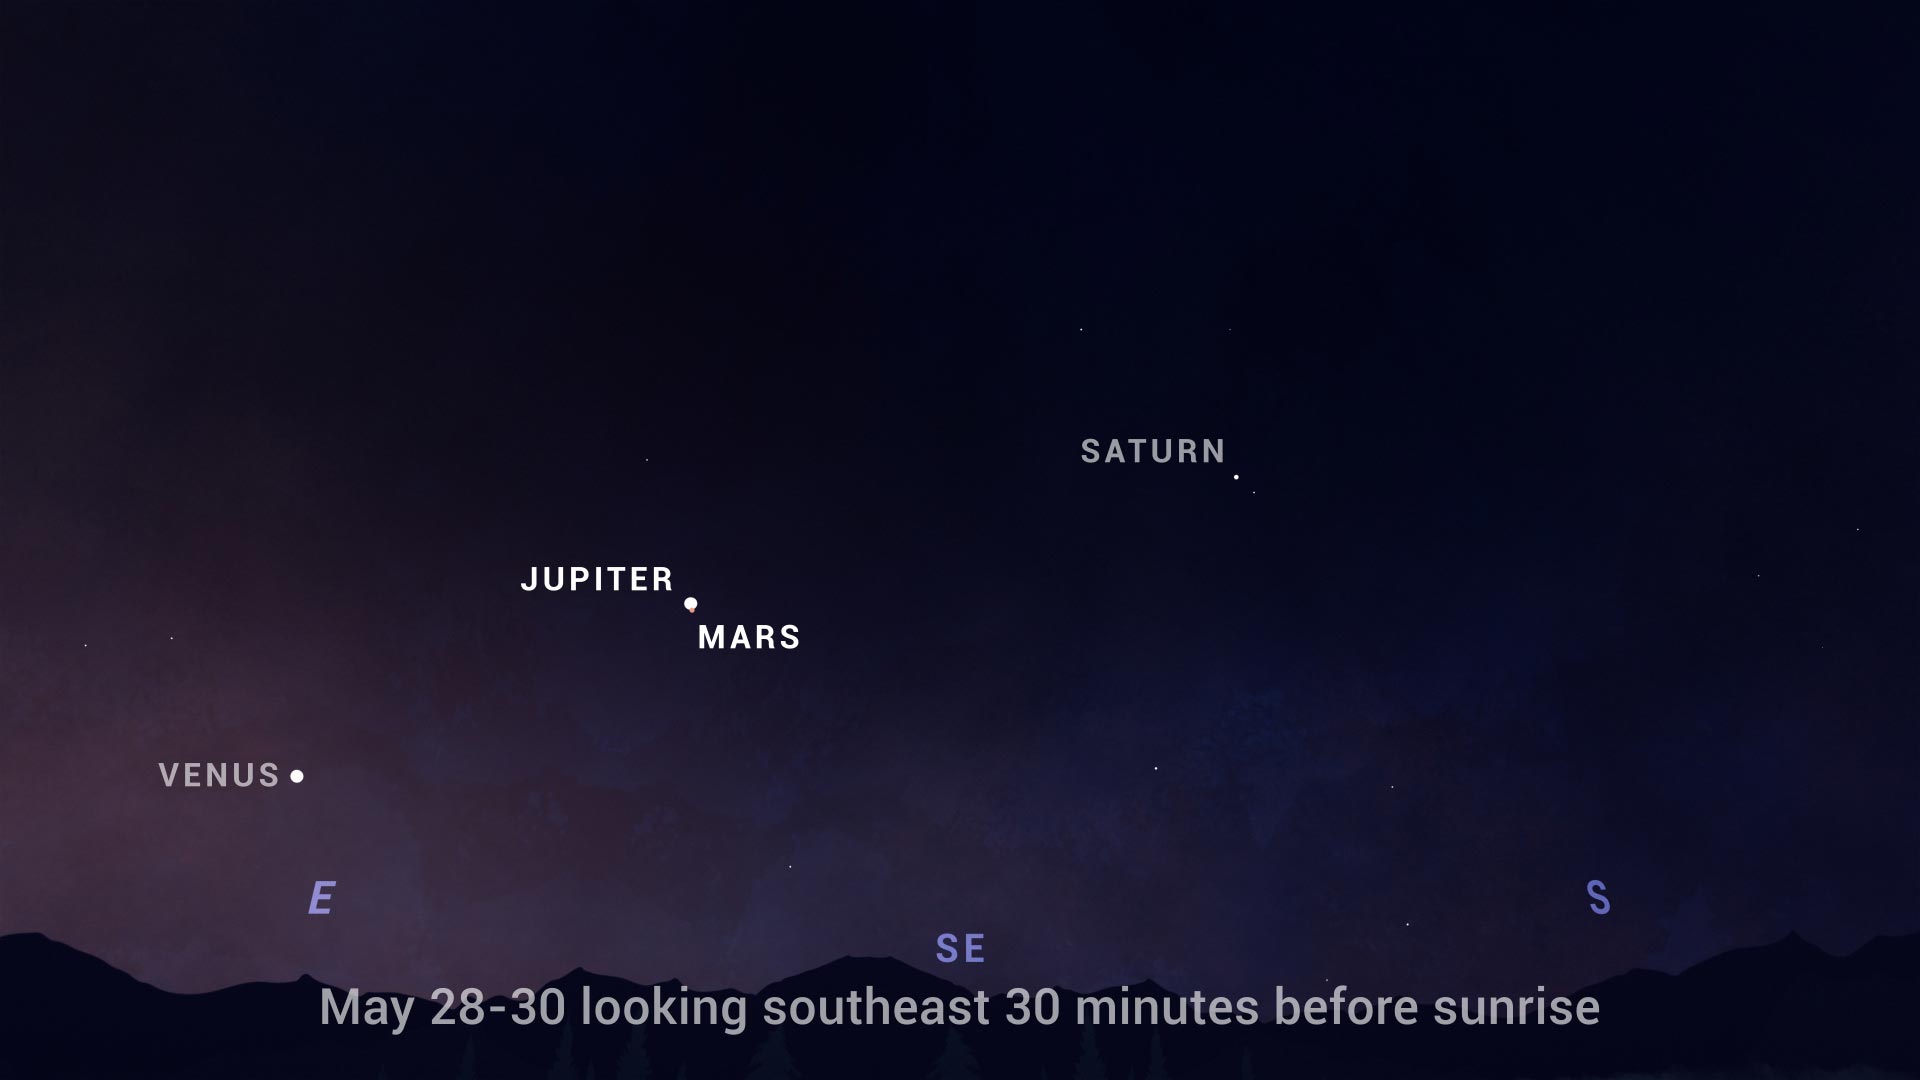 Vista principal de la conjunción de Marte y Júpiter